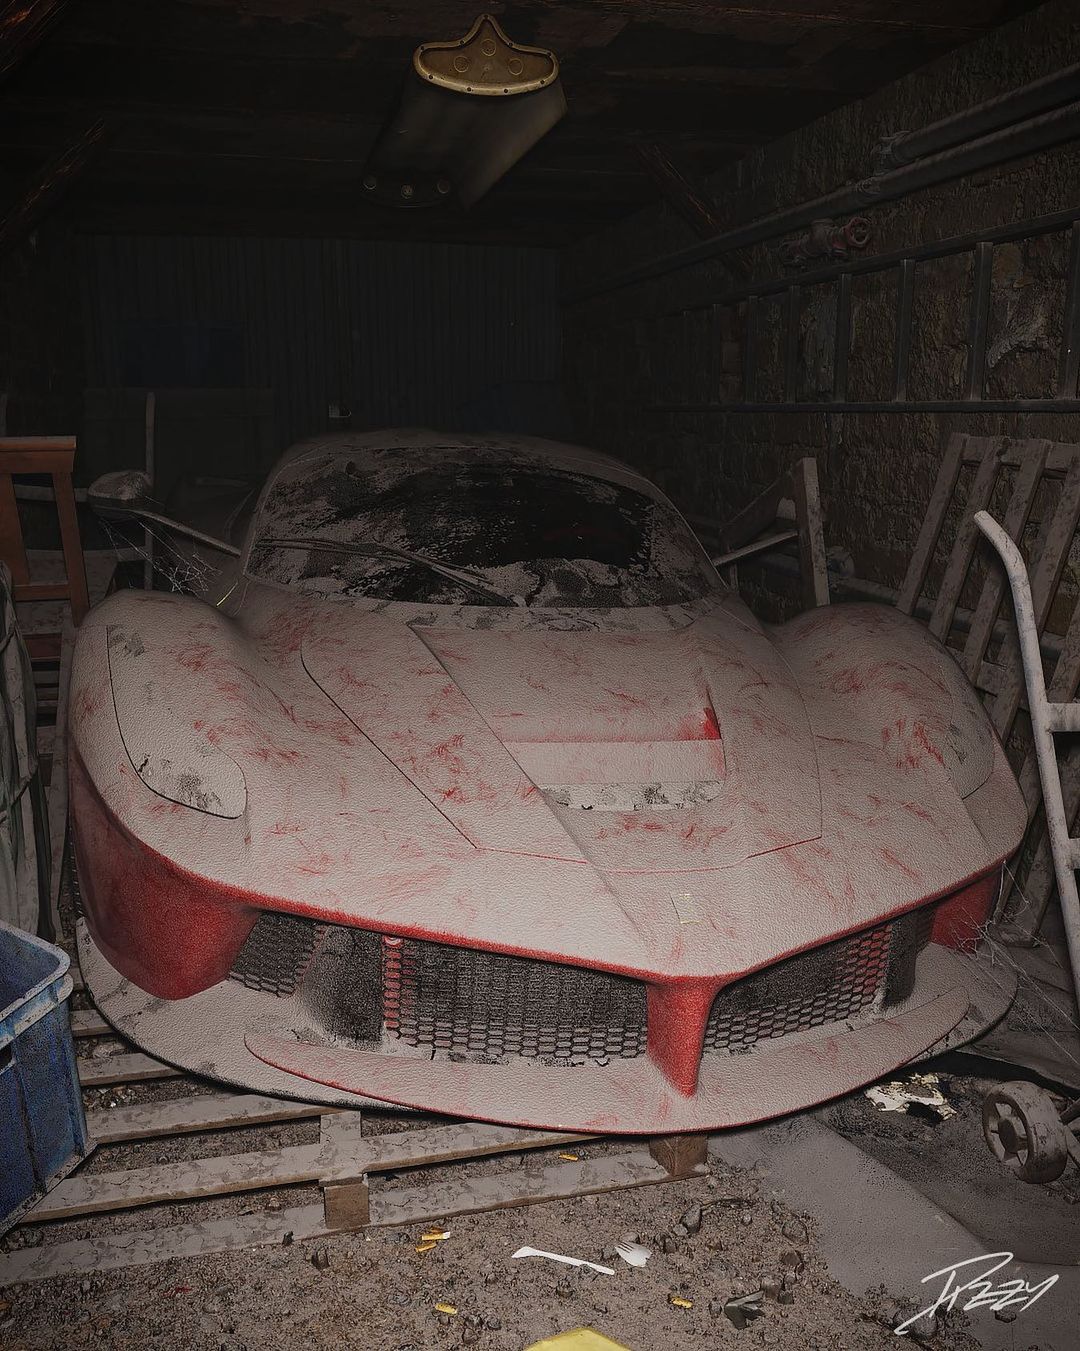 Coleção de carros abandonados / Foto: Dizzy Viper